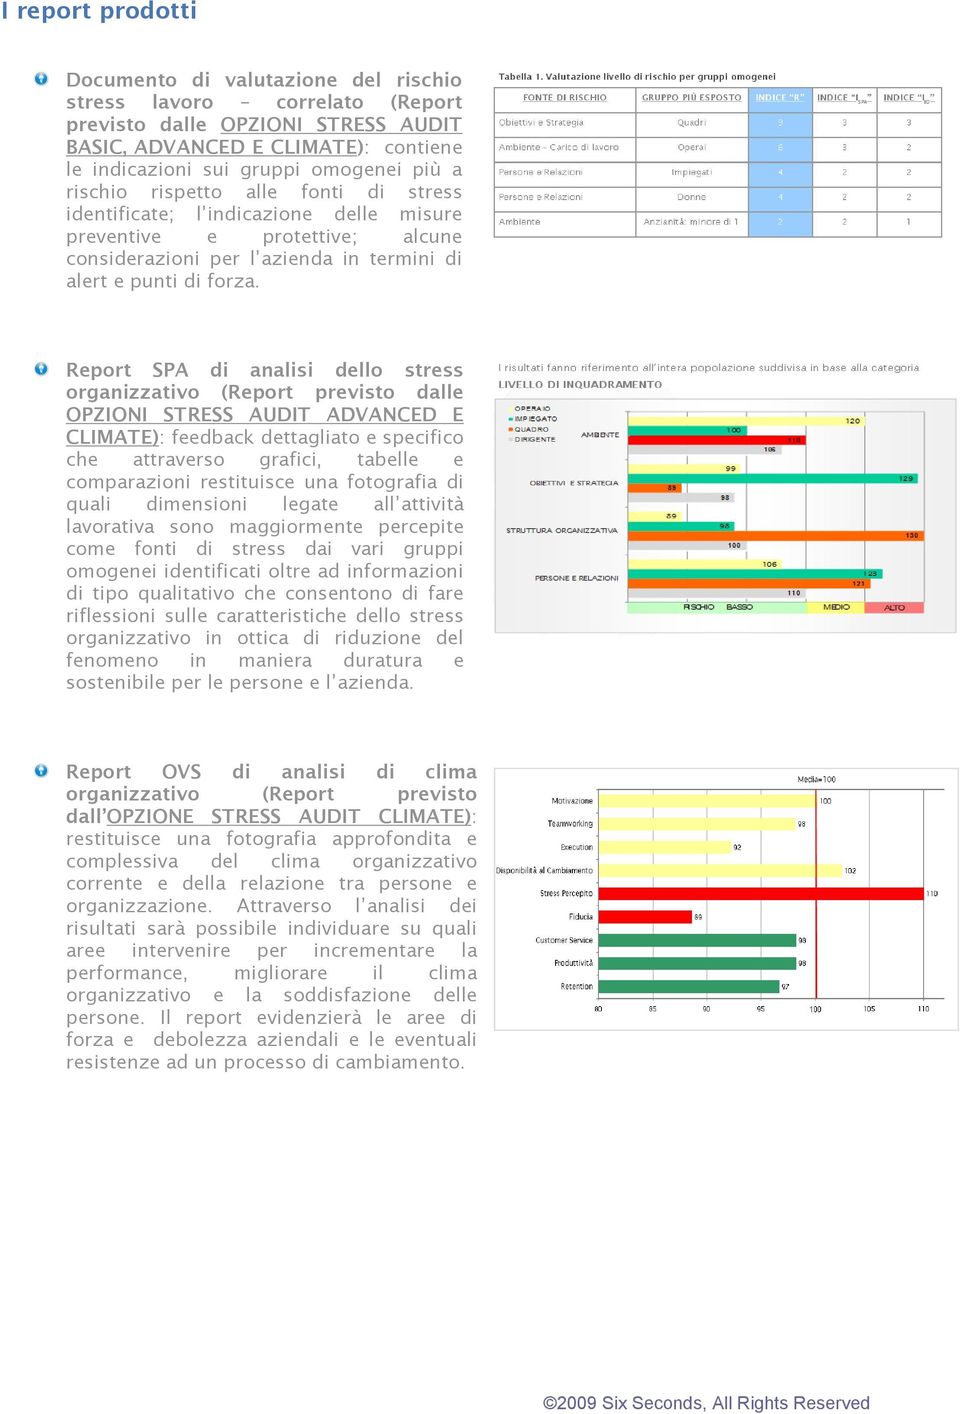 Report SPA di analisi dello stress organizzativo (Report previsto dalle OPZIONI STRESS AUDIT ADVANCED E CLIMATE): feedback dettagliato e specifico che attraverso grafici, tabelle e comparazioni